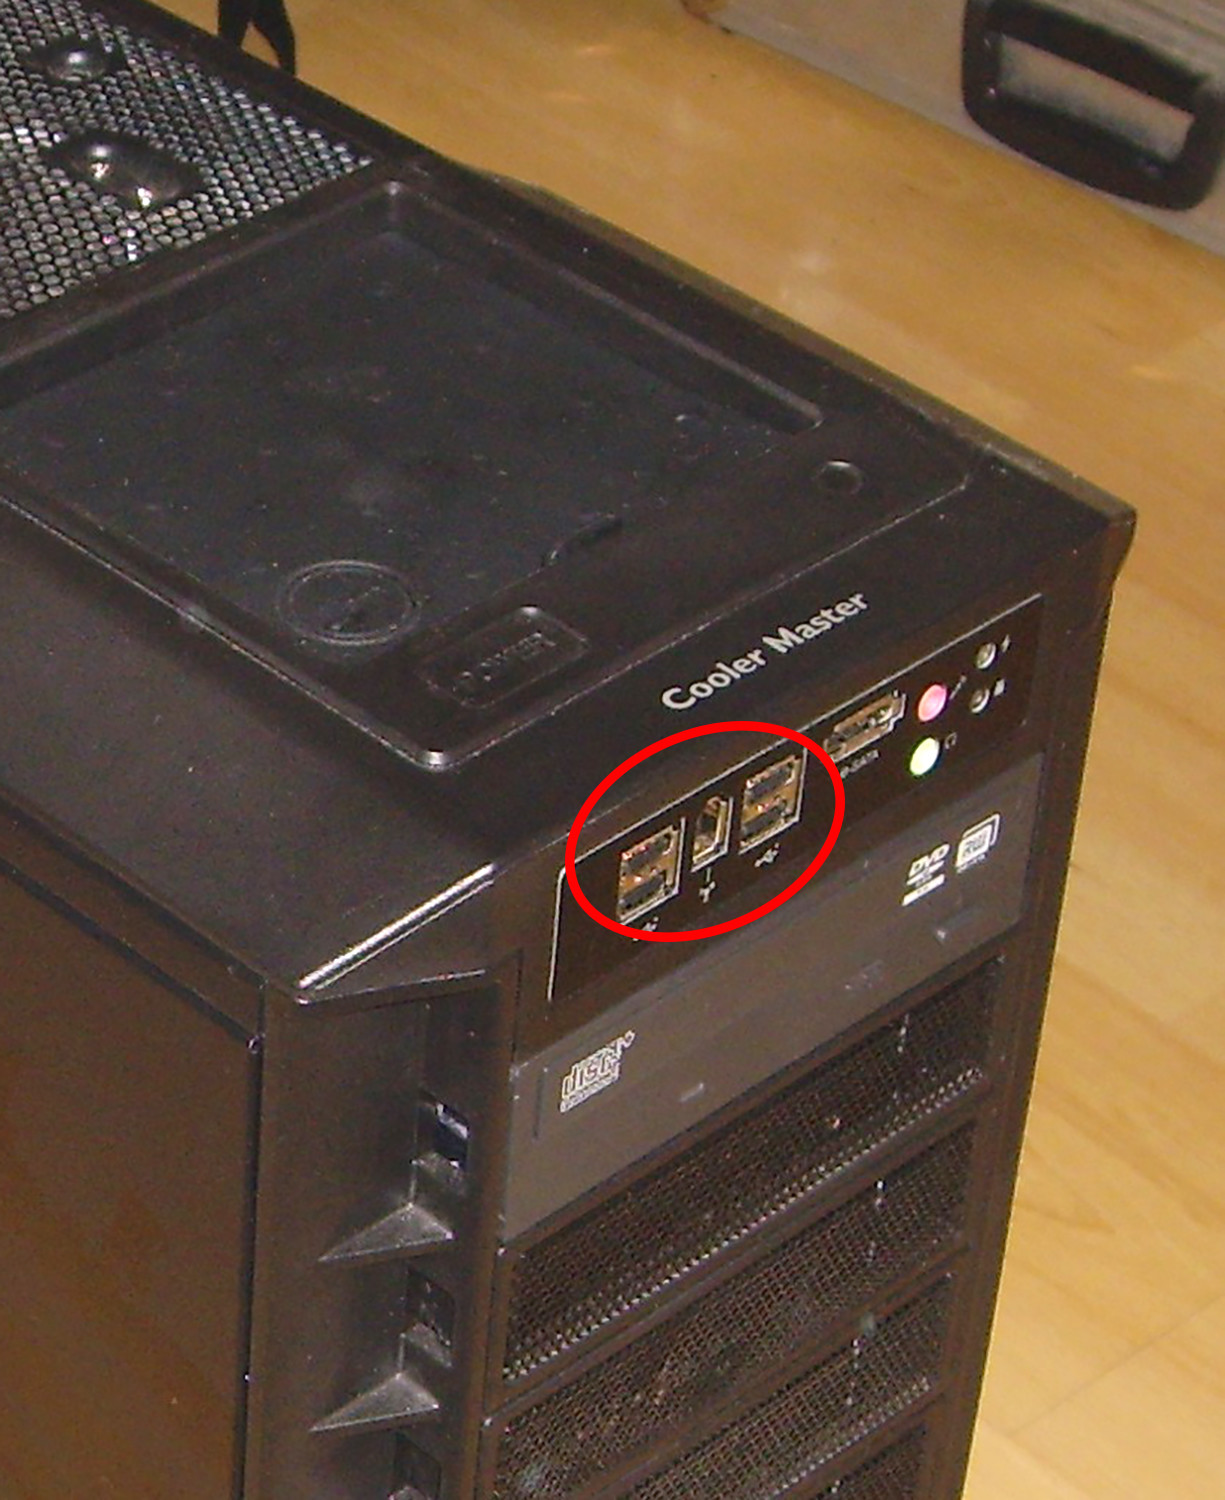  Cooler Master Haf 932 için USB Bölümüne ne yapabilirim?